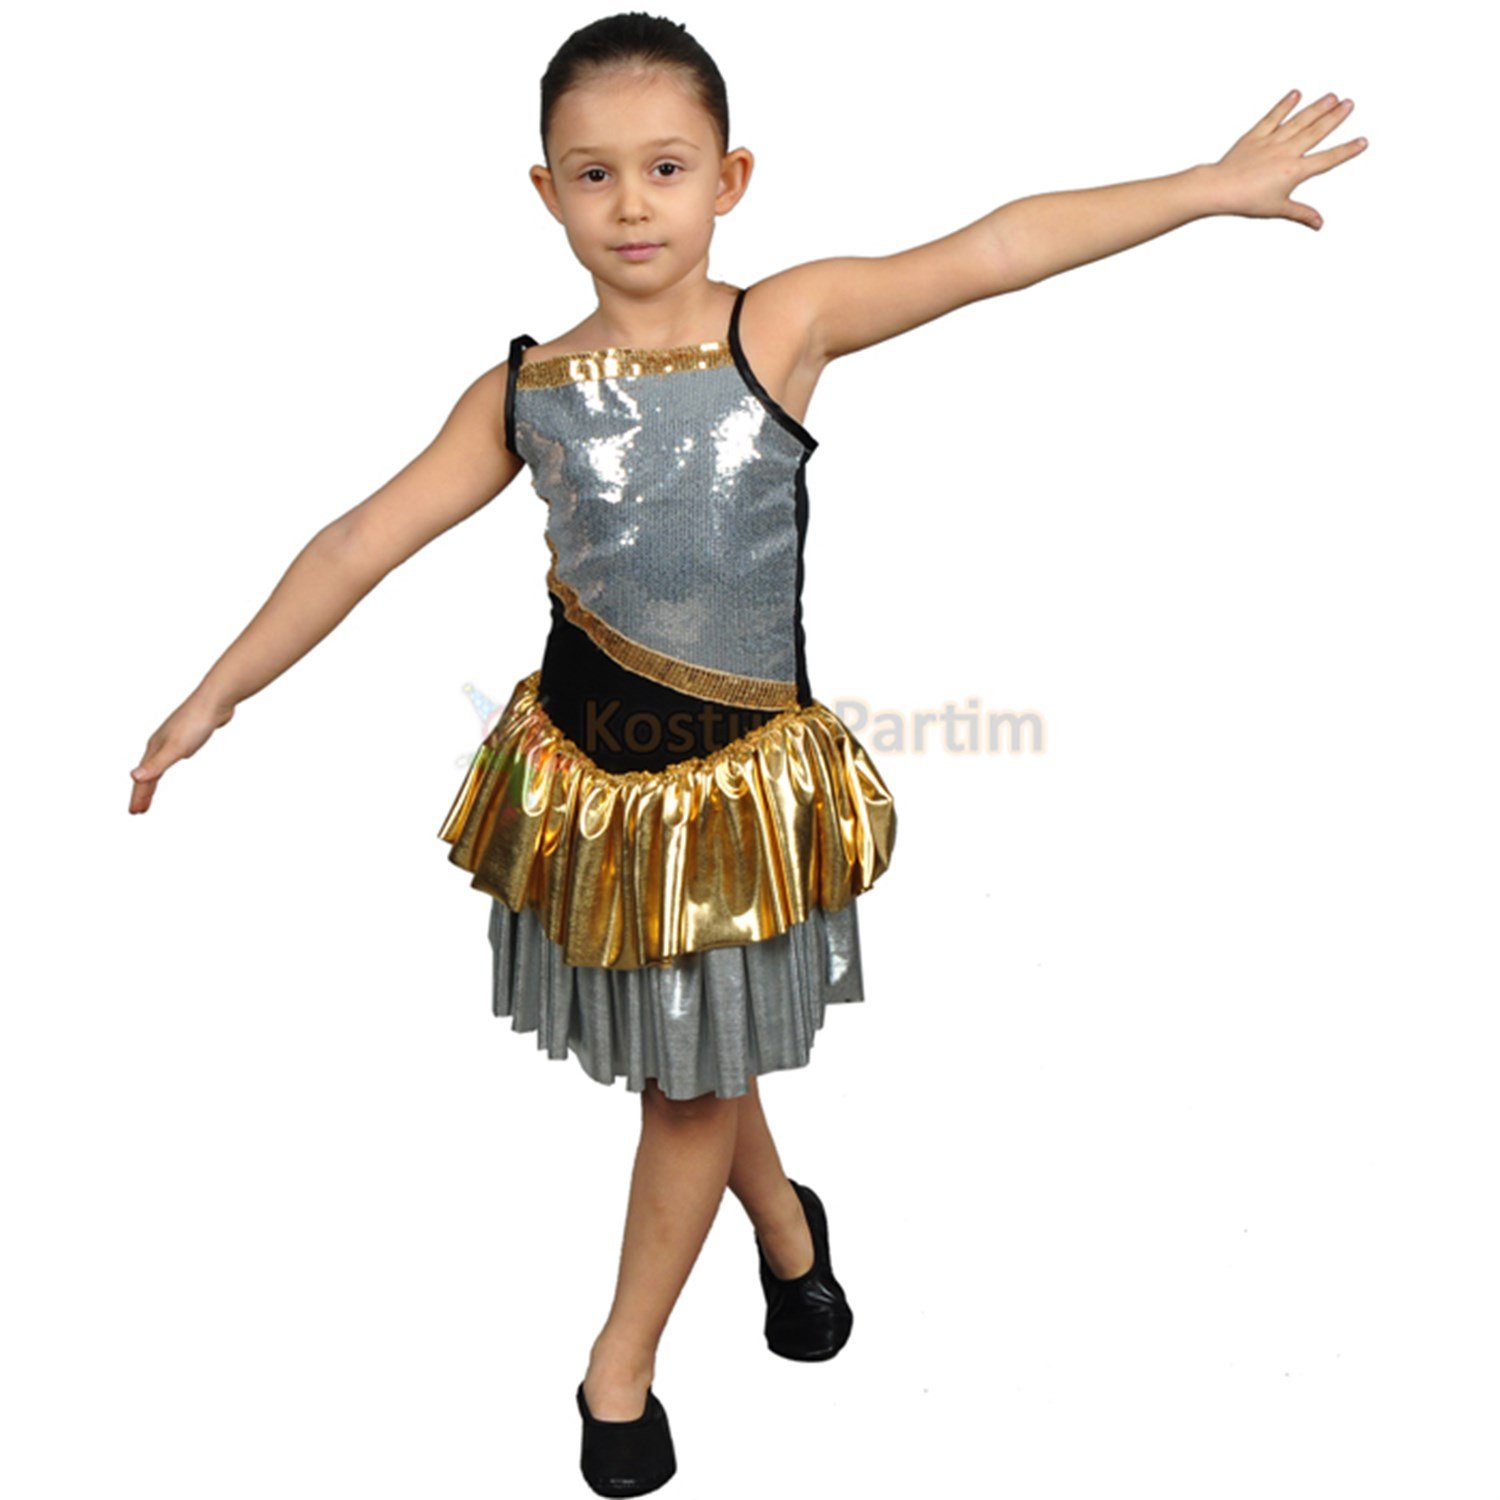 Lüx Modern Dans Kostümü Kız Çocuk - KostümPartim®